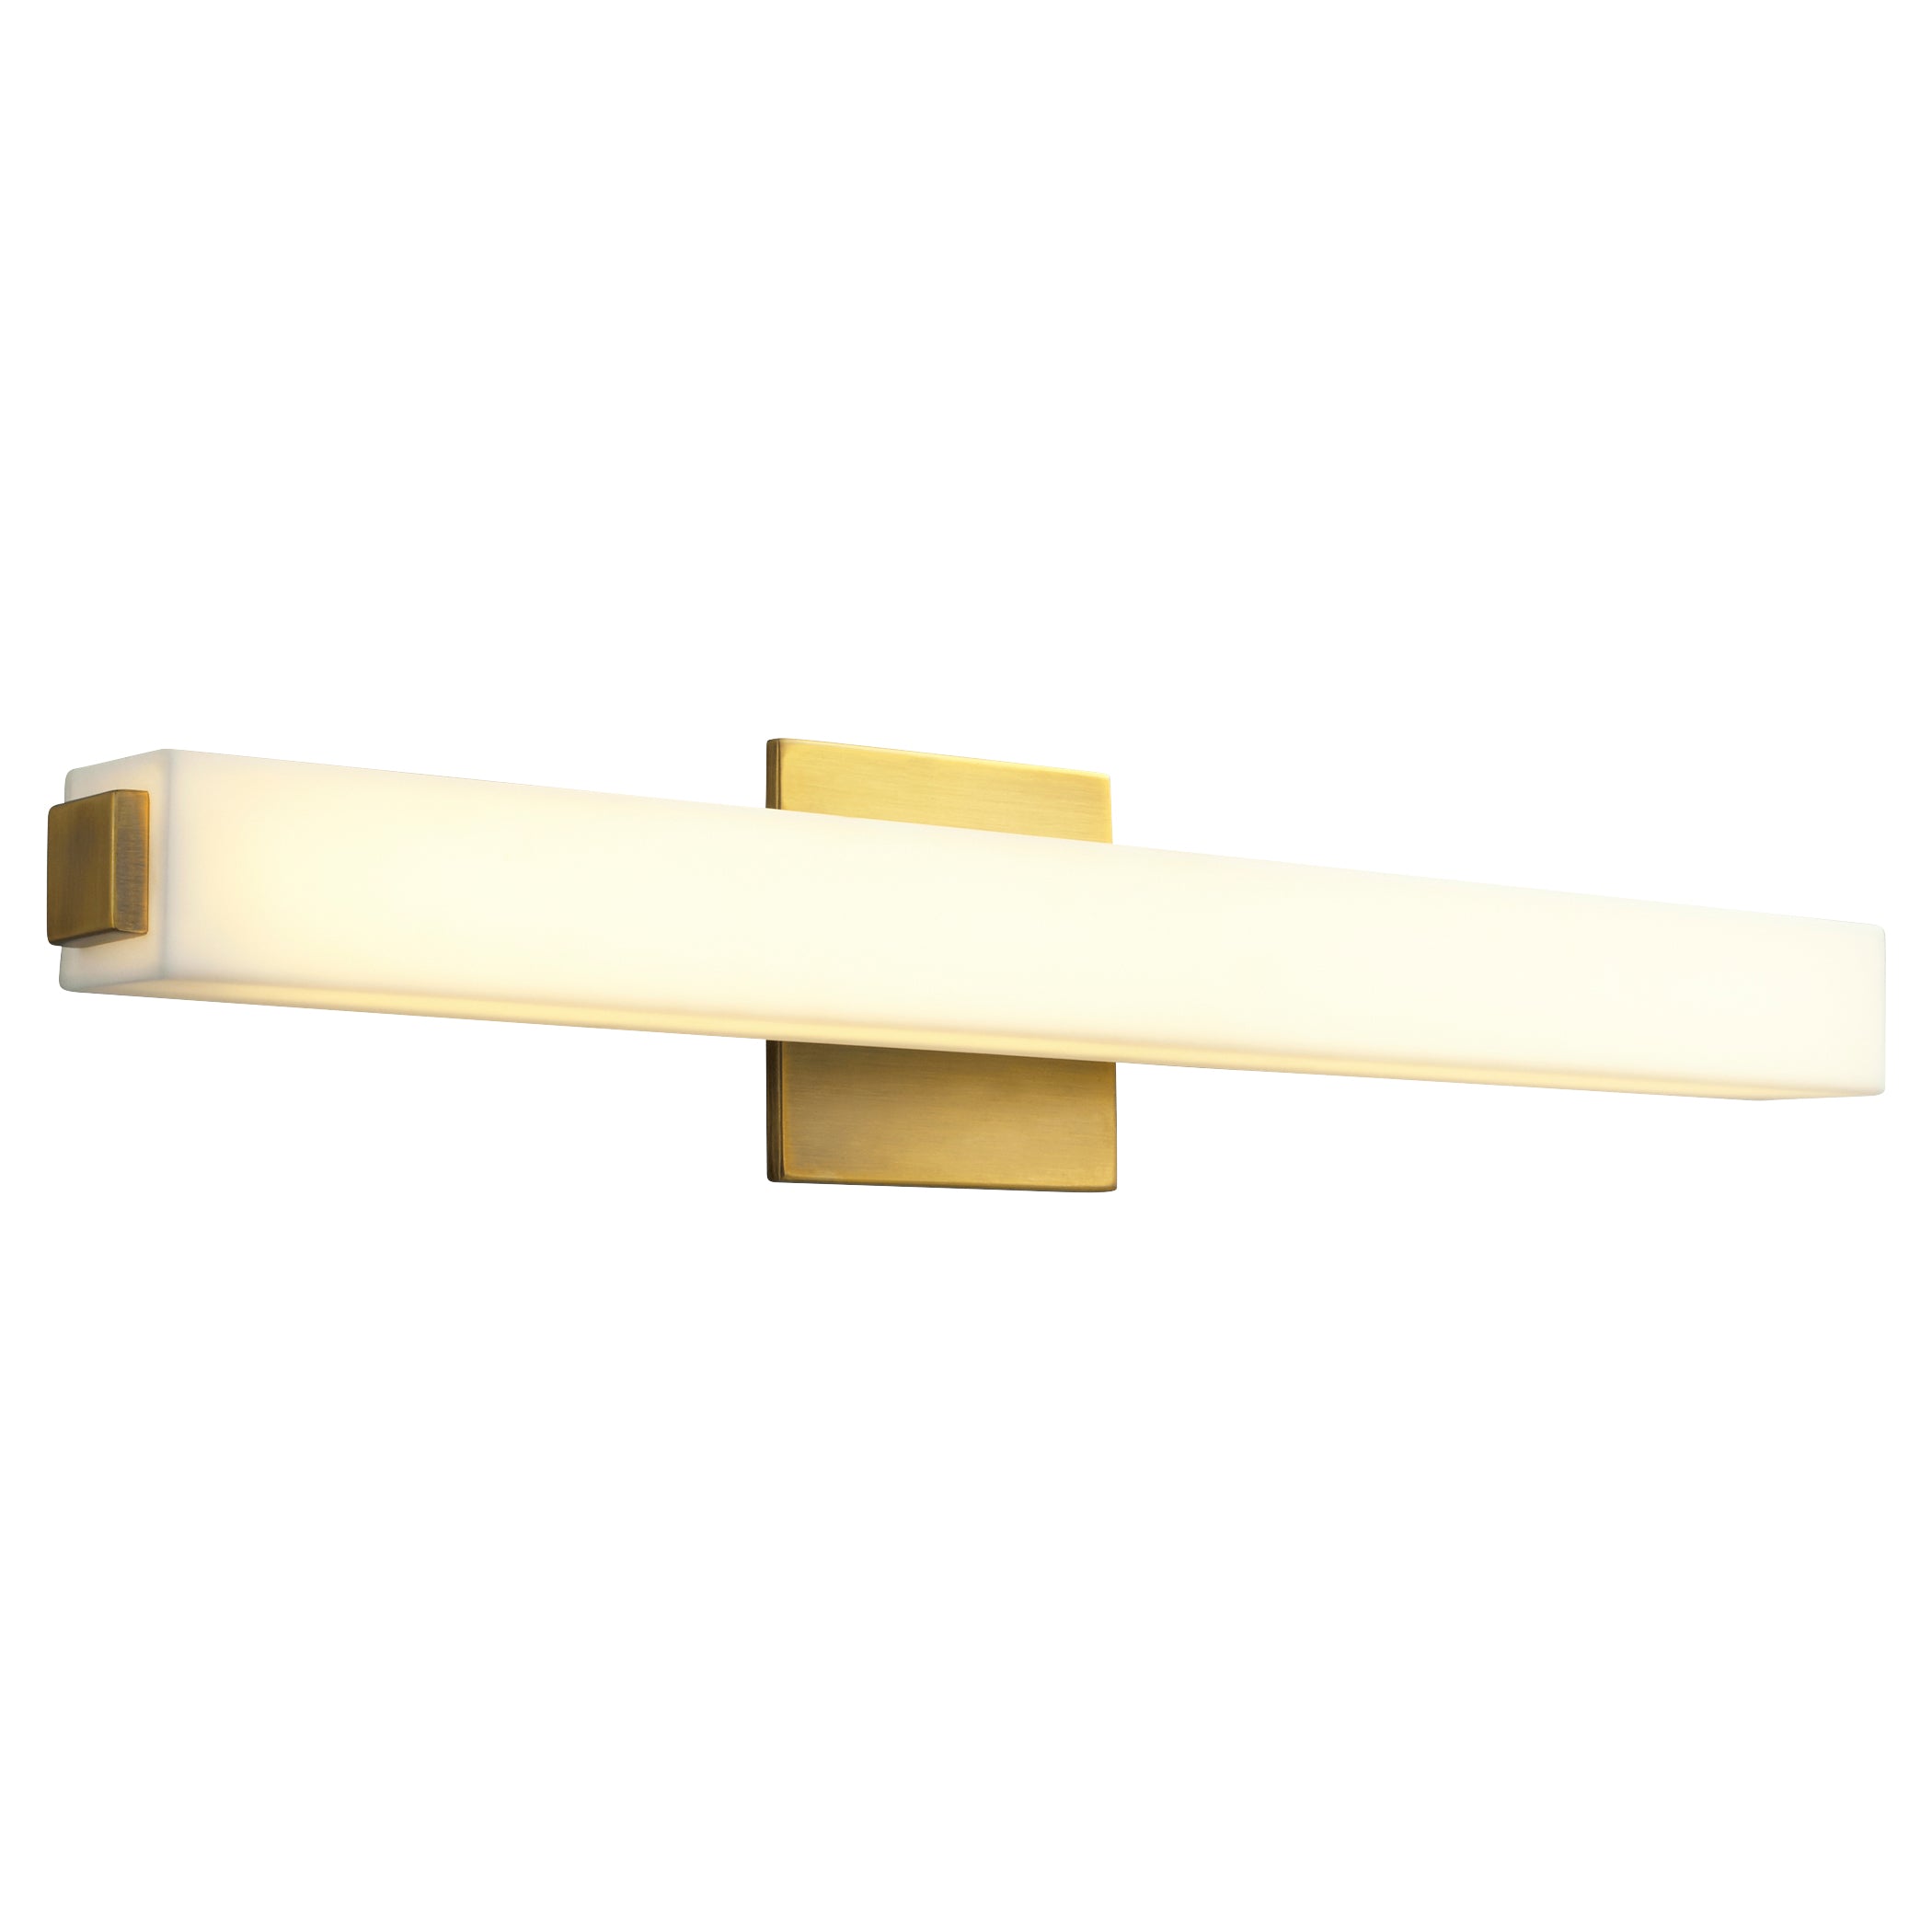 Oxygen Adelphi 3-537-40 Bathroom Vanity Light Fixture - Antique Brass